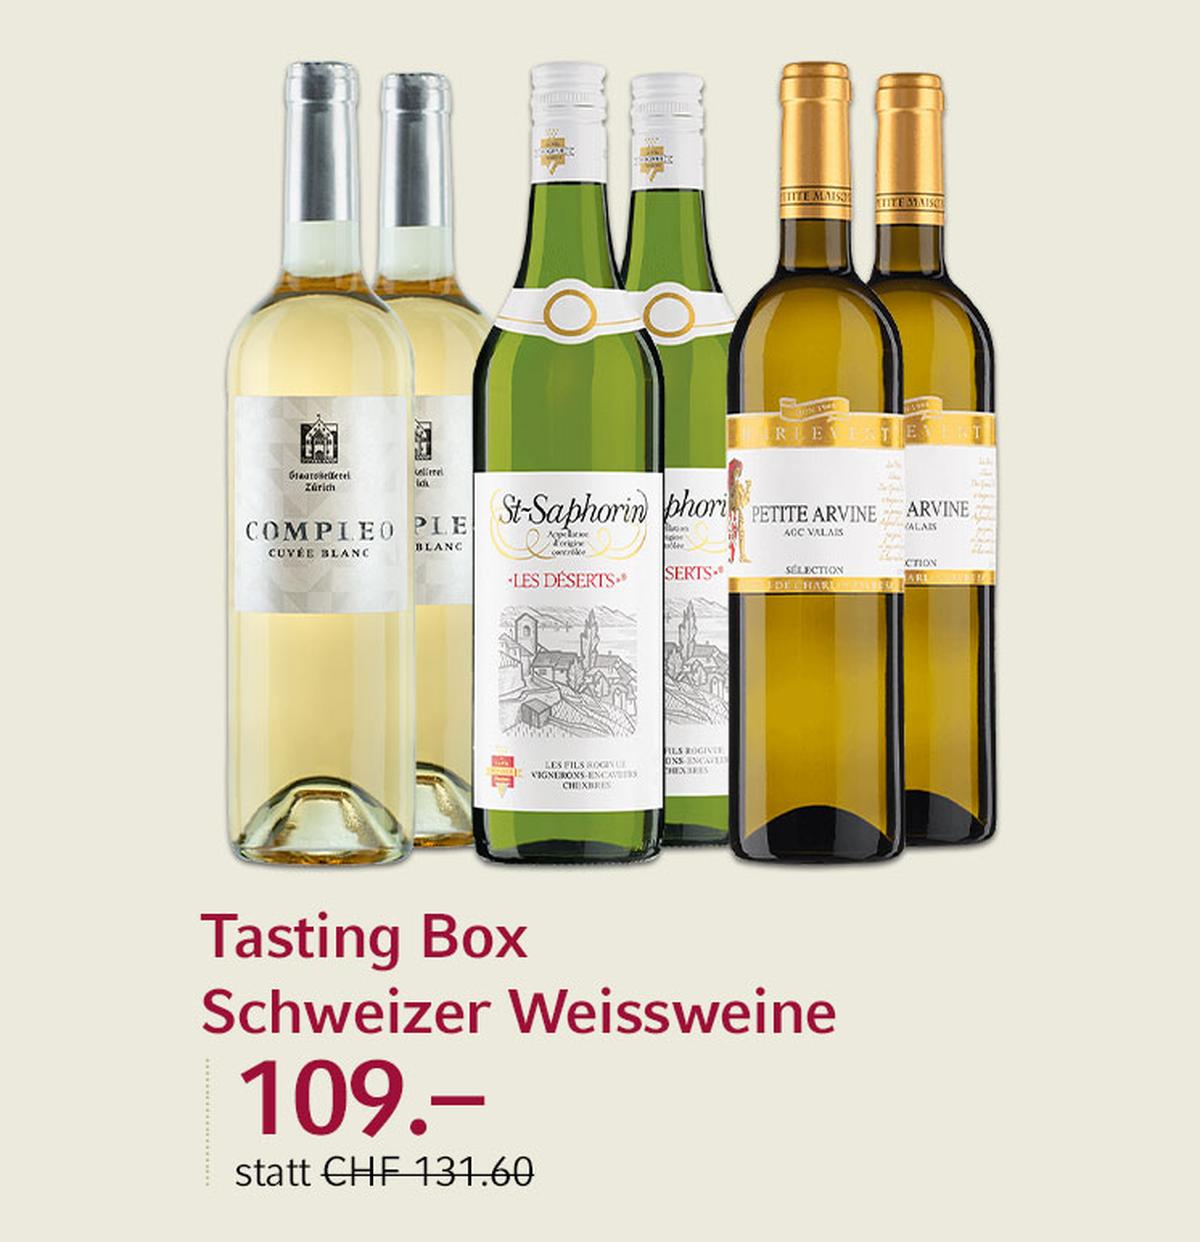 Genf, Wallis, Zürich – drei Schweizer Weissweine aus verschiedenen Regionen werden in der Tasting Box angeboten.